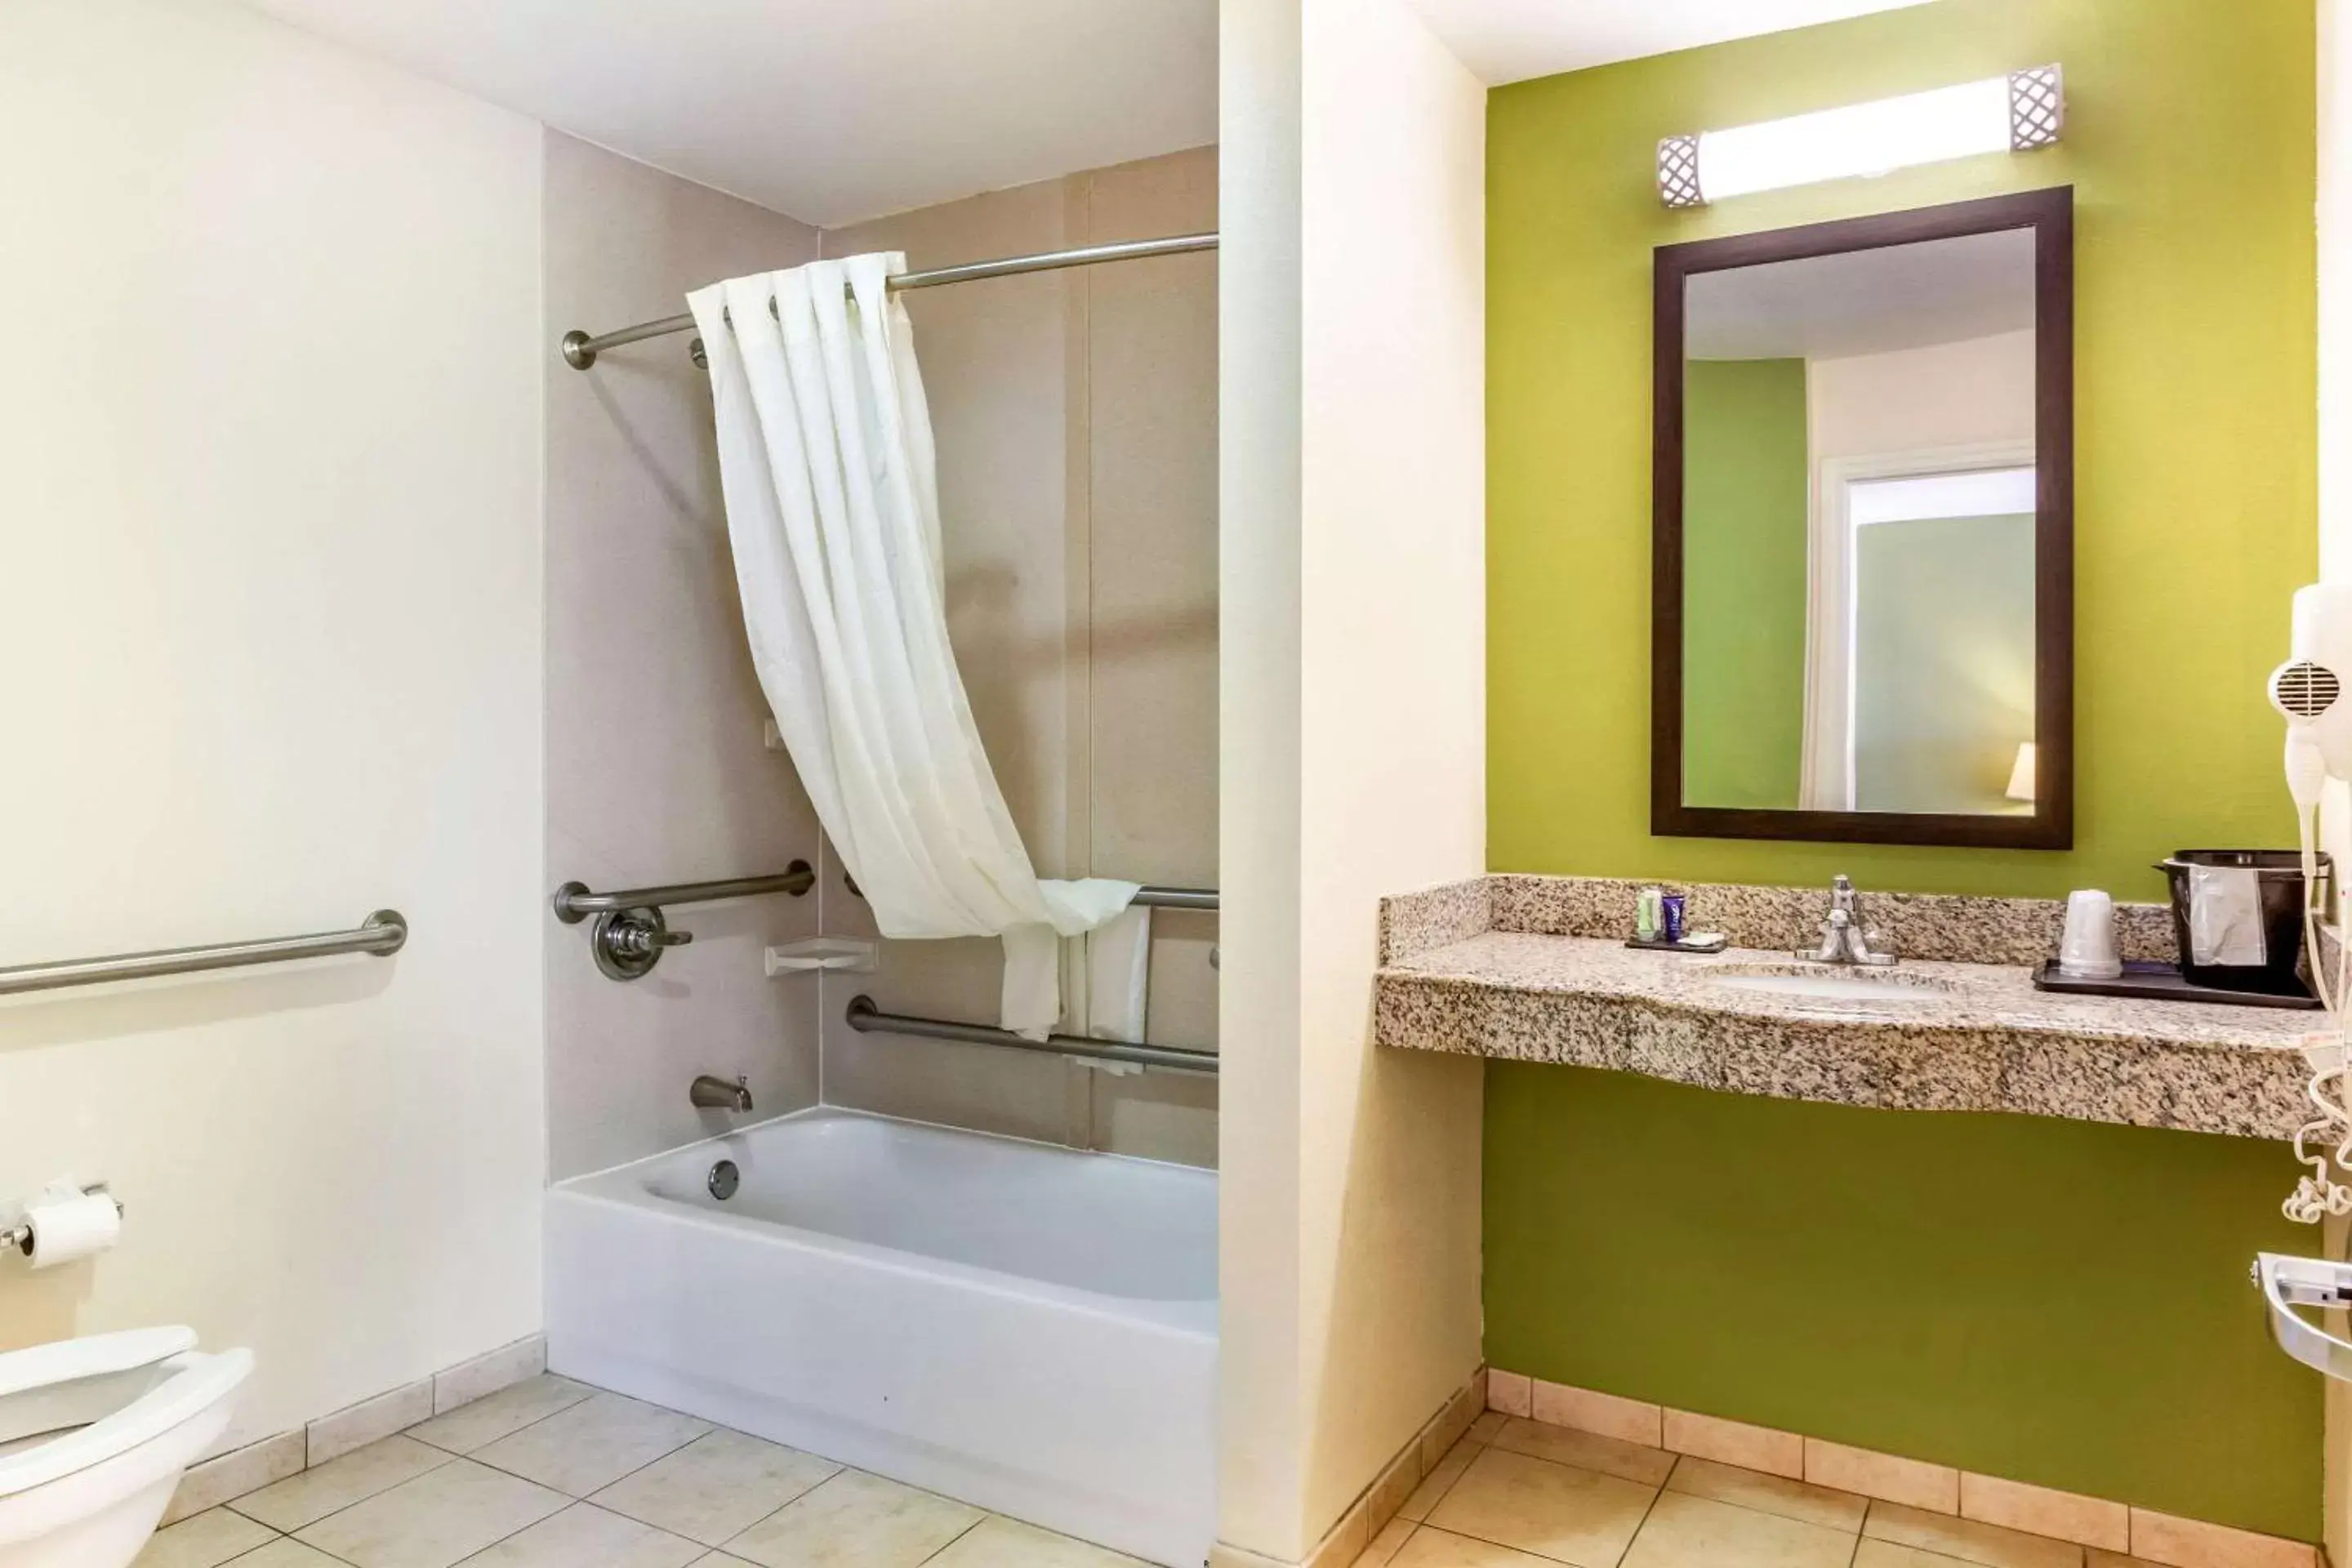 Photo of the whole room, Bathroom in Sleep Inn & Suites - Jacksonville